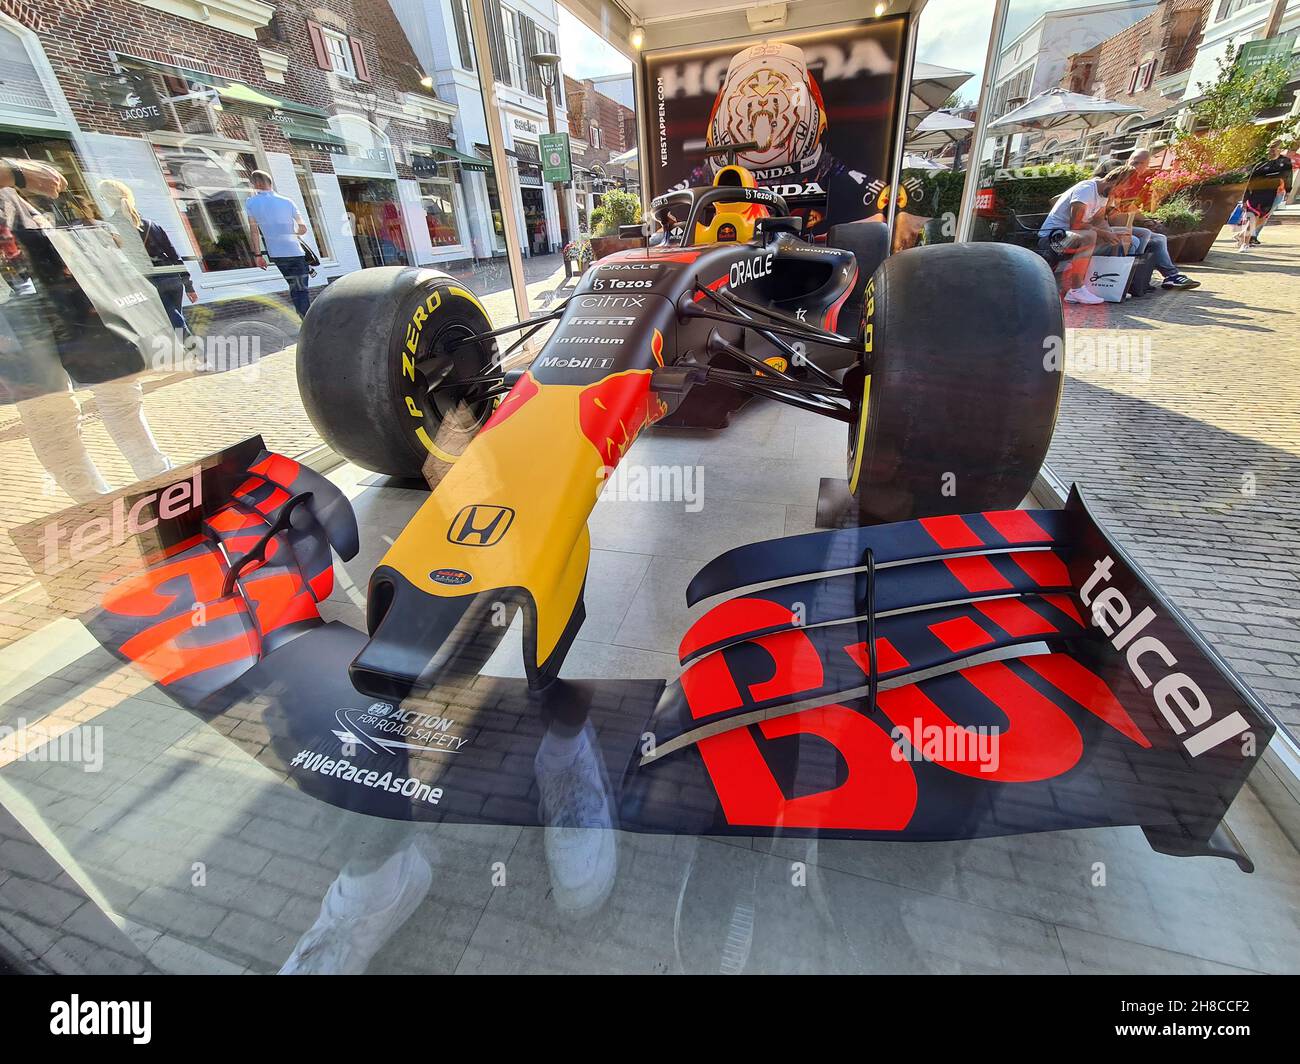 Fórmula Un coche se muestra en una caja de cristal en la zona peatonal Foto de stock